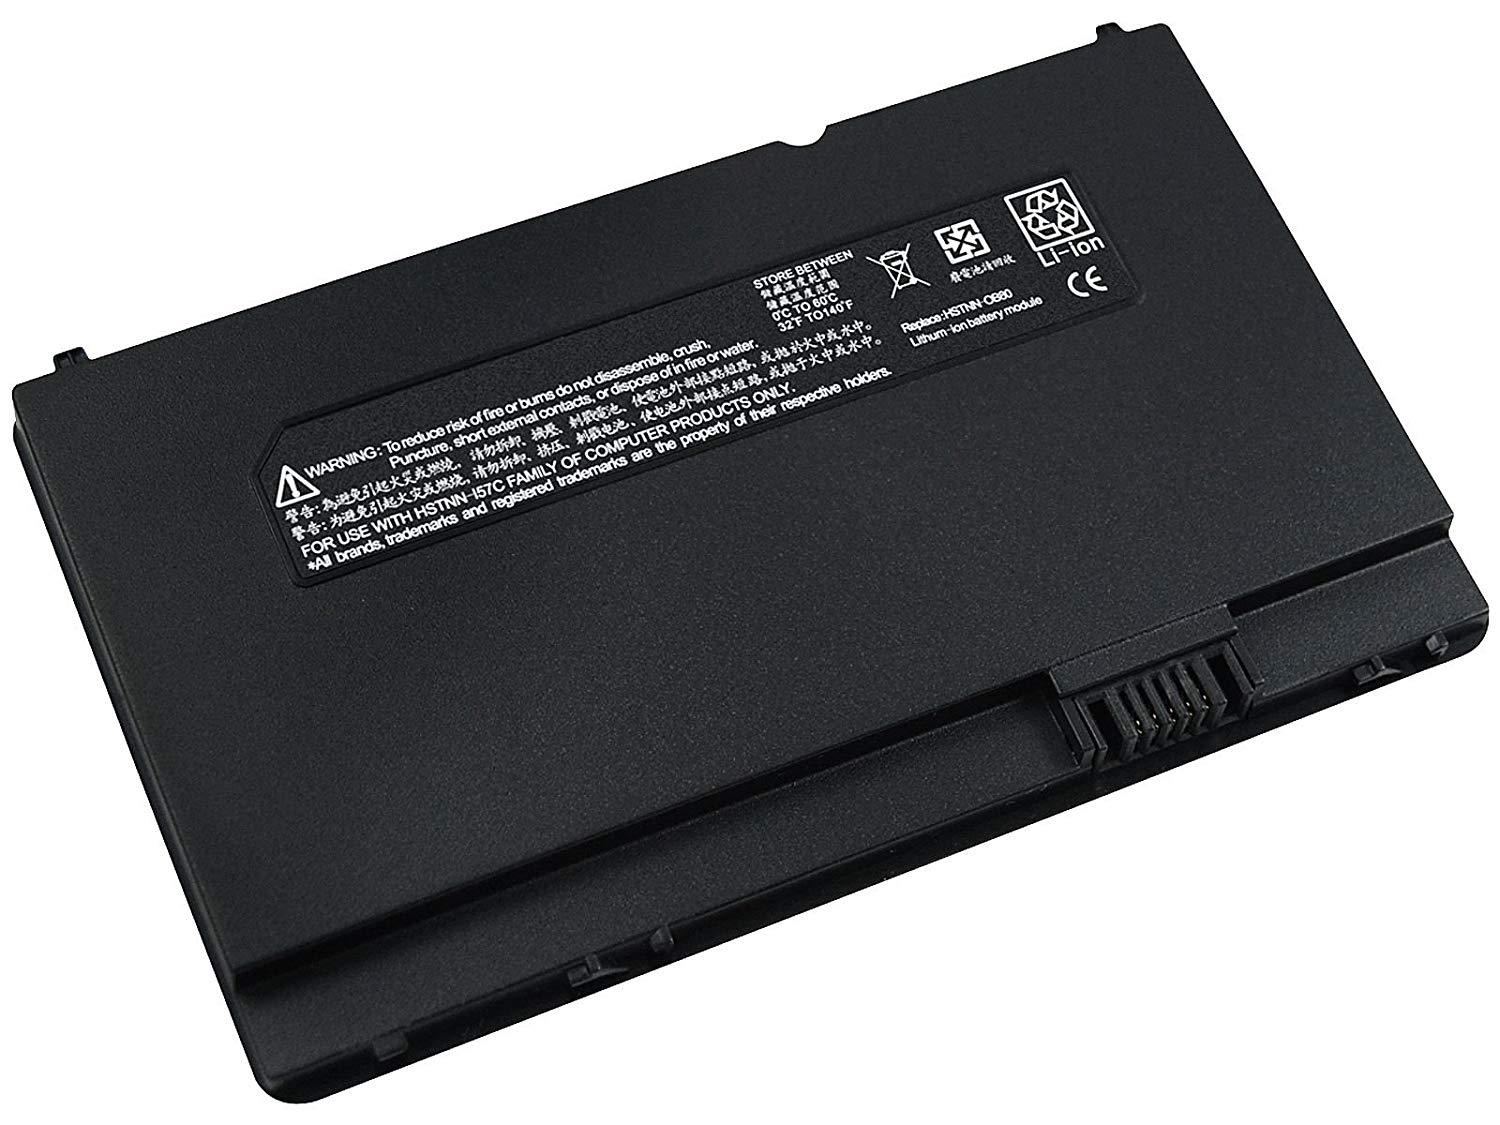 HP Mini 1099ee Vivienne Tam Edition Laptop Battery - eBuy UAE